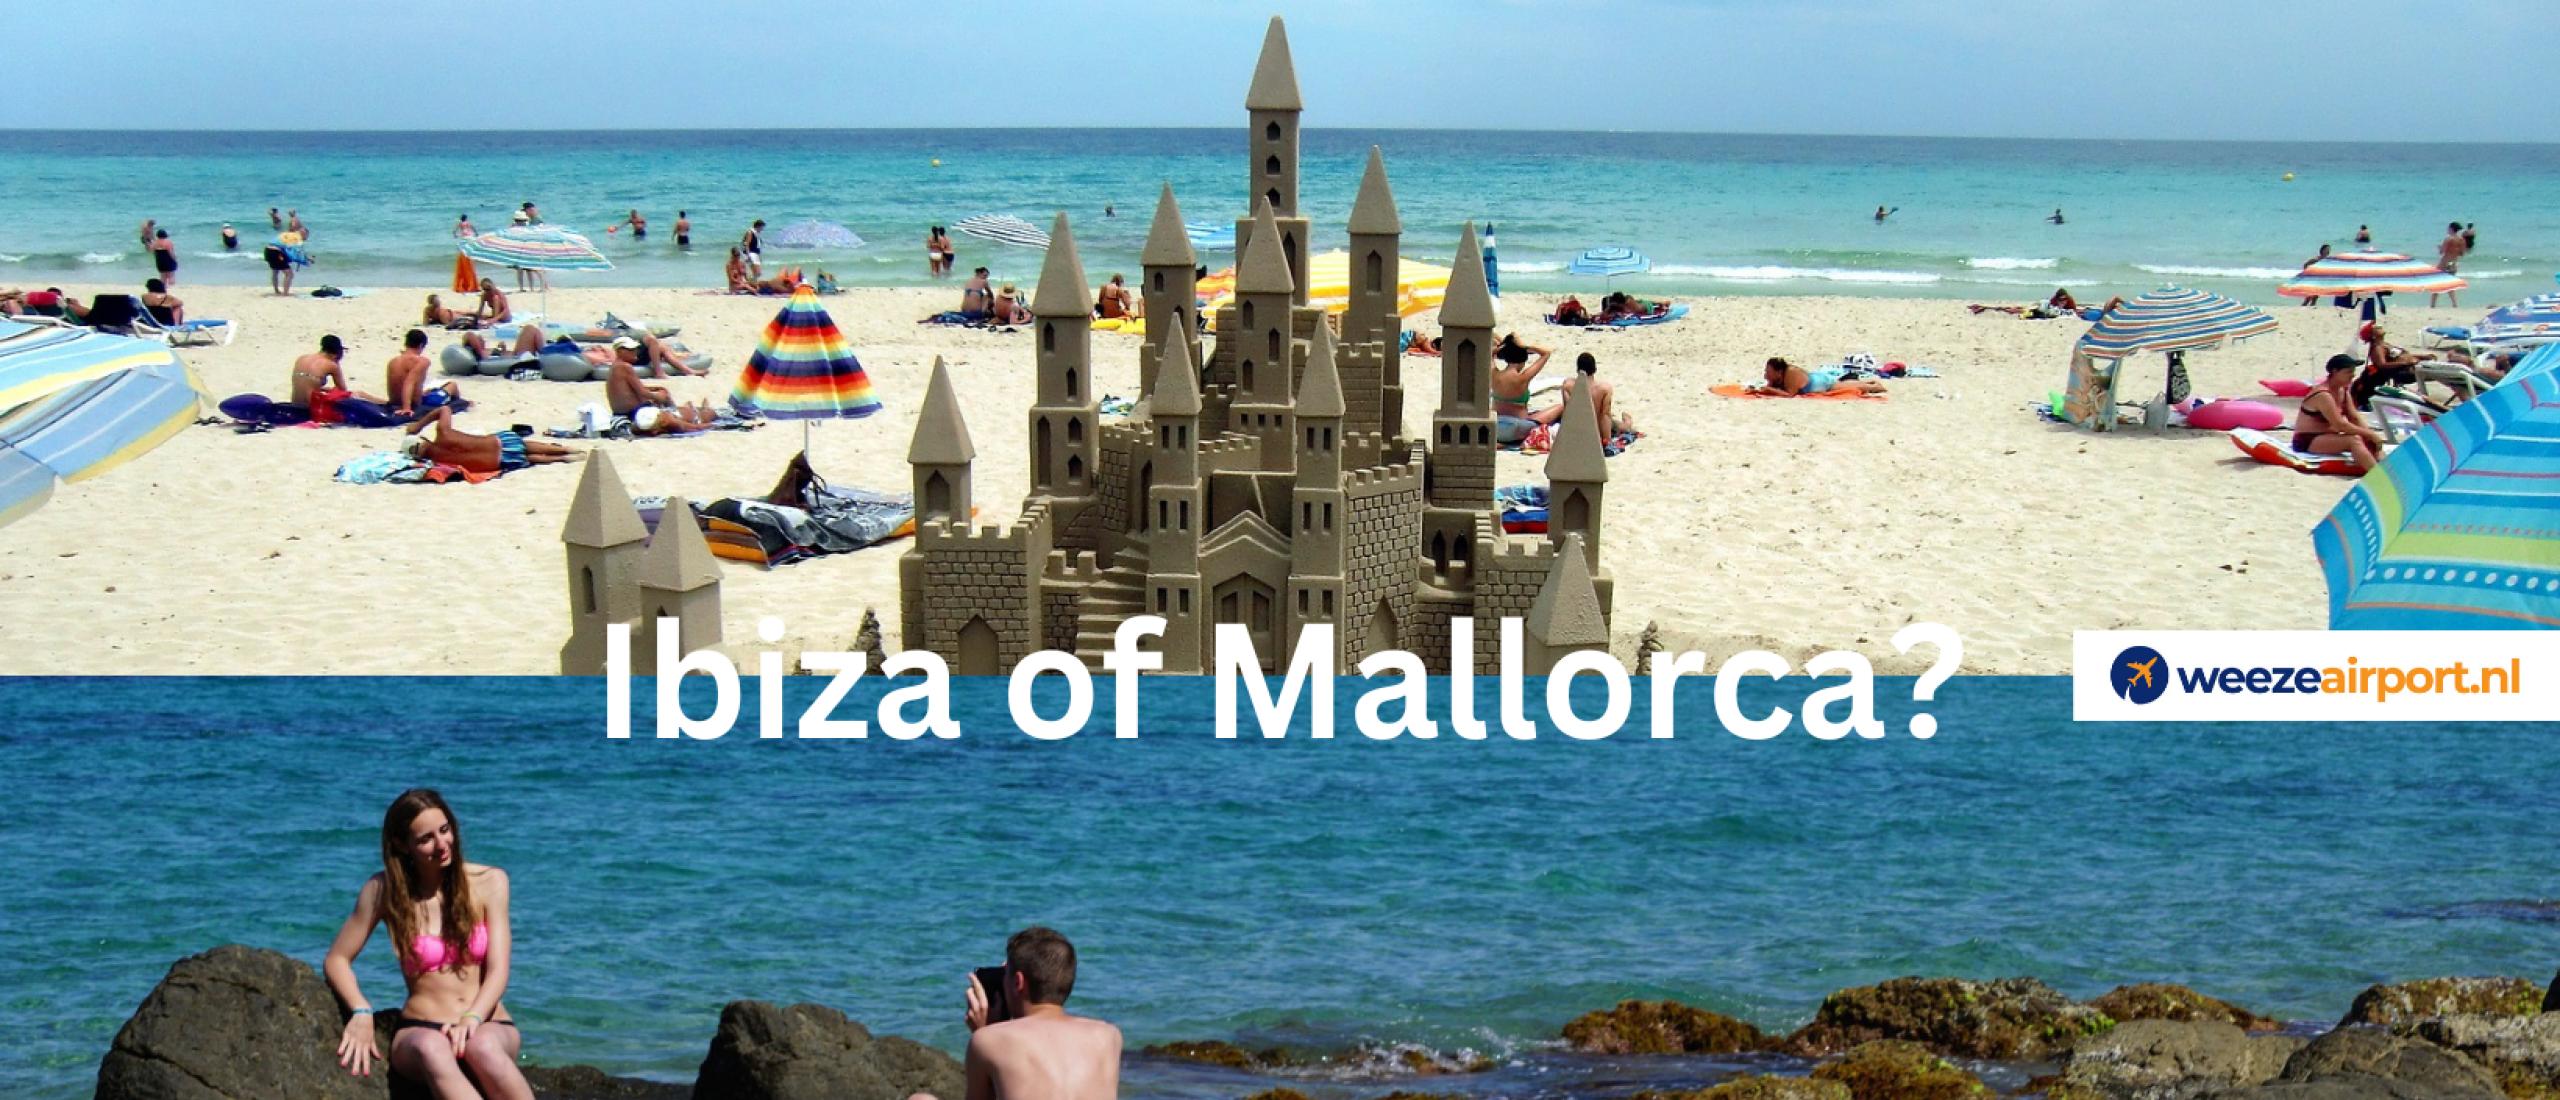 Ibiza of Mallorca? 5 grootste verschillen - Welke past bij jou?